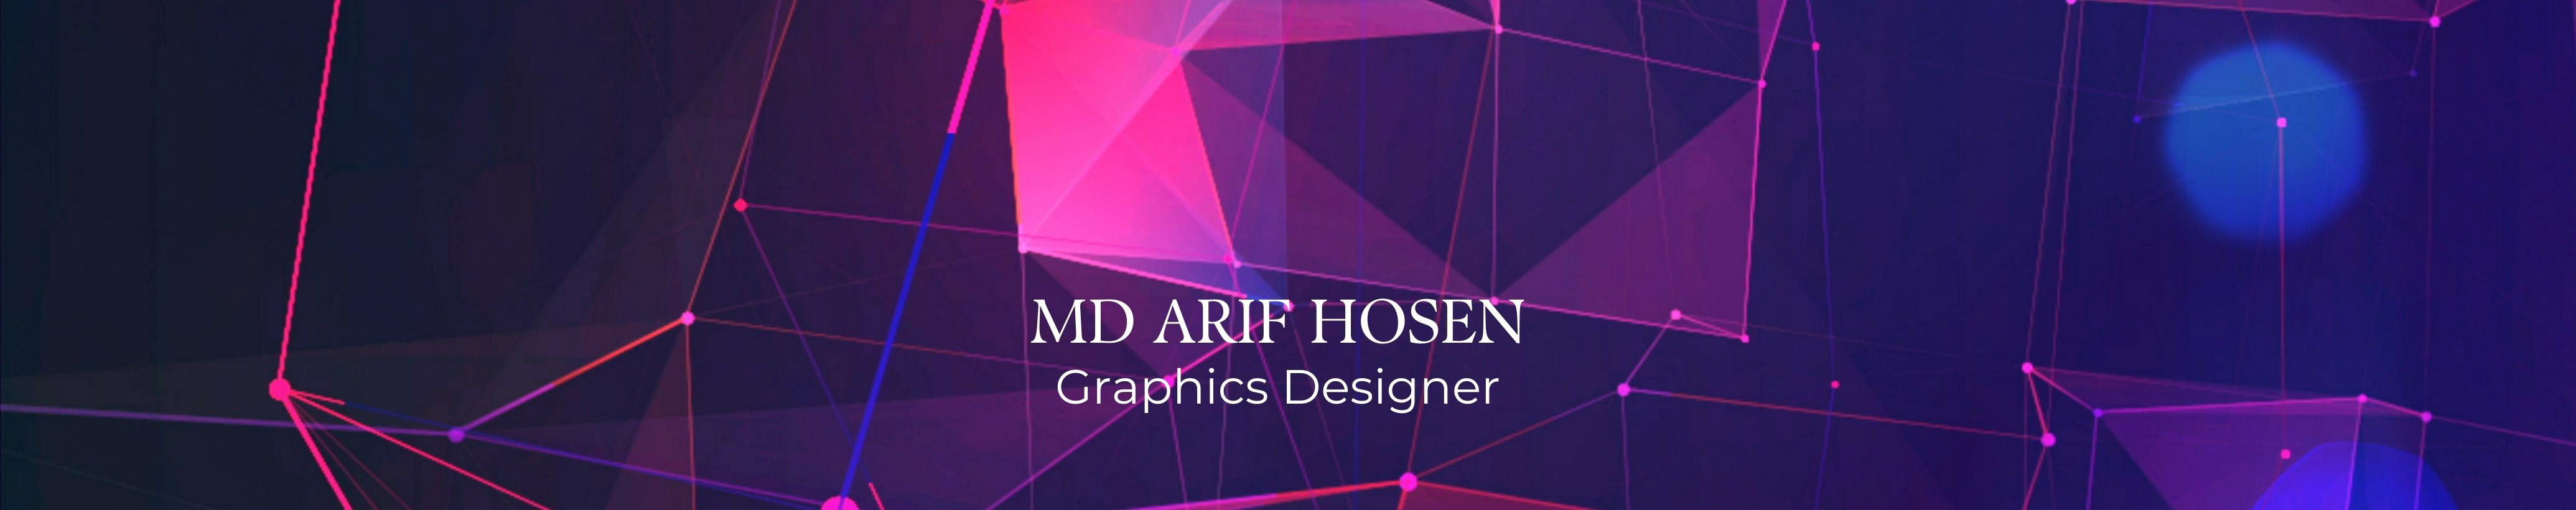 Md Arif Hosen's profile banner